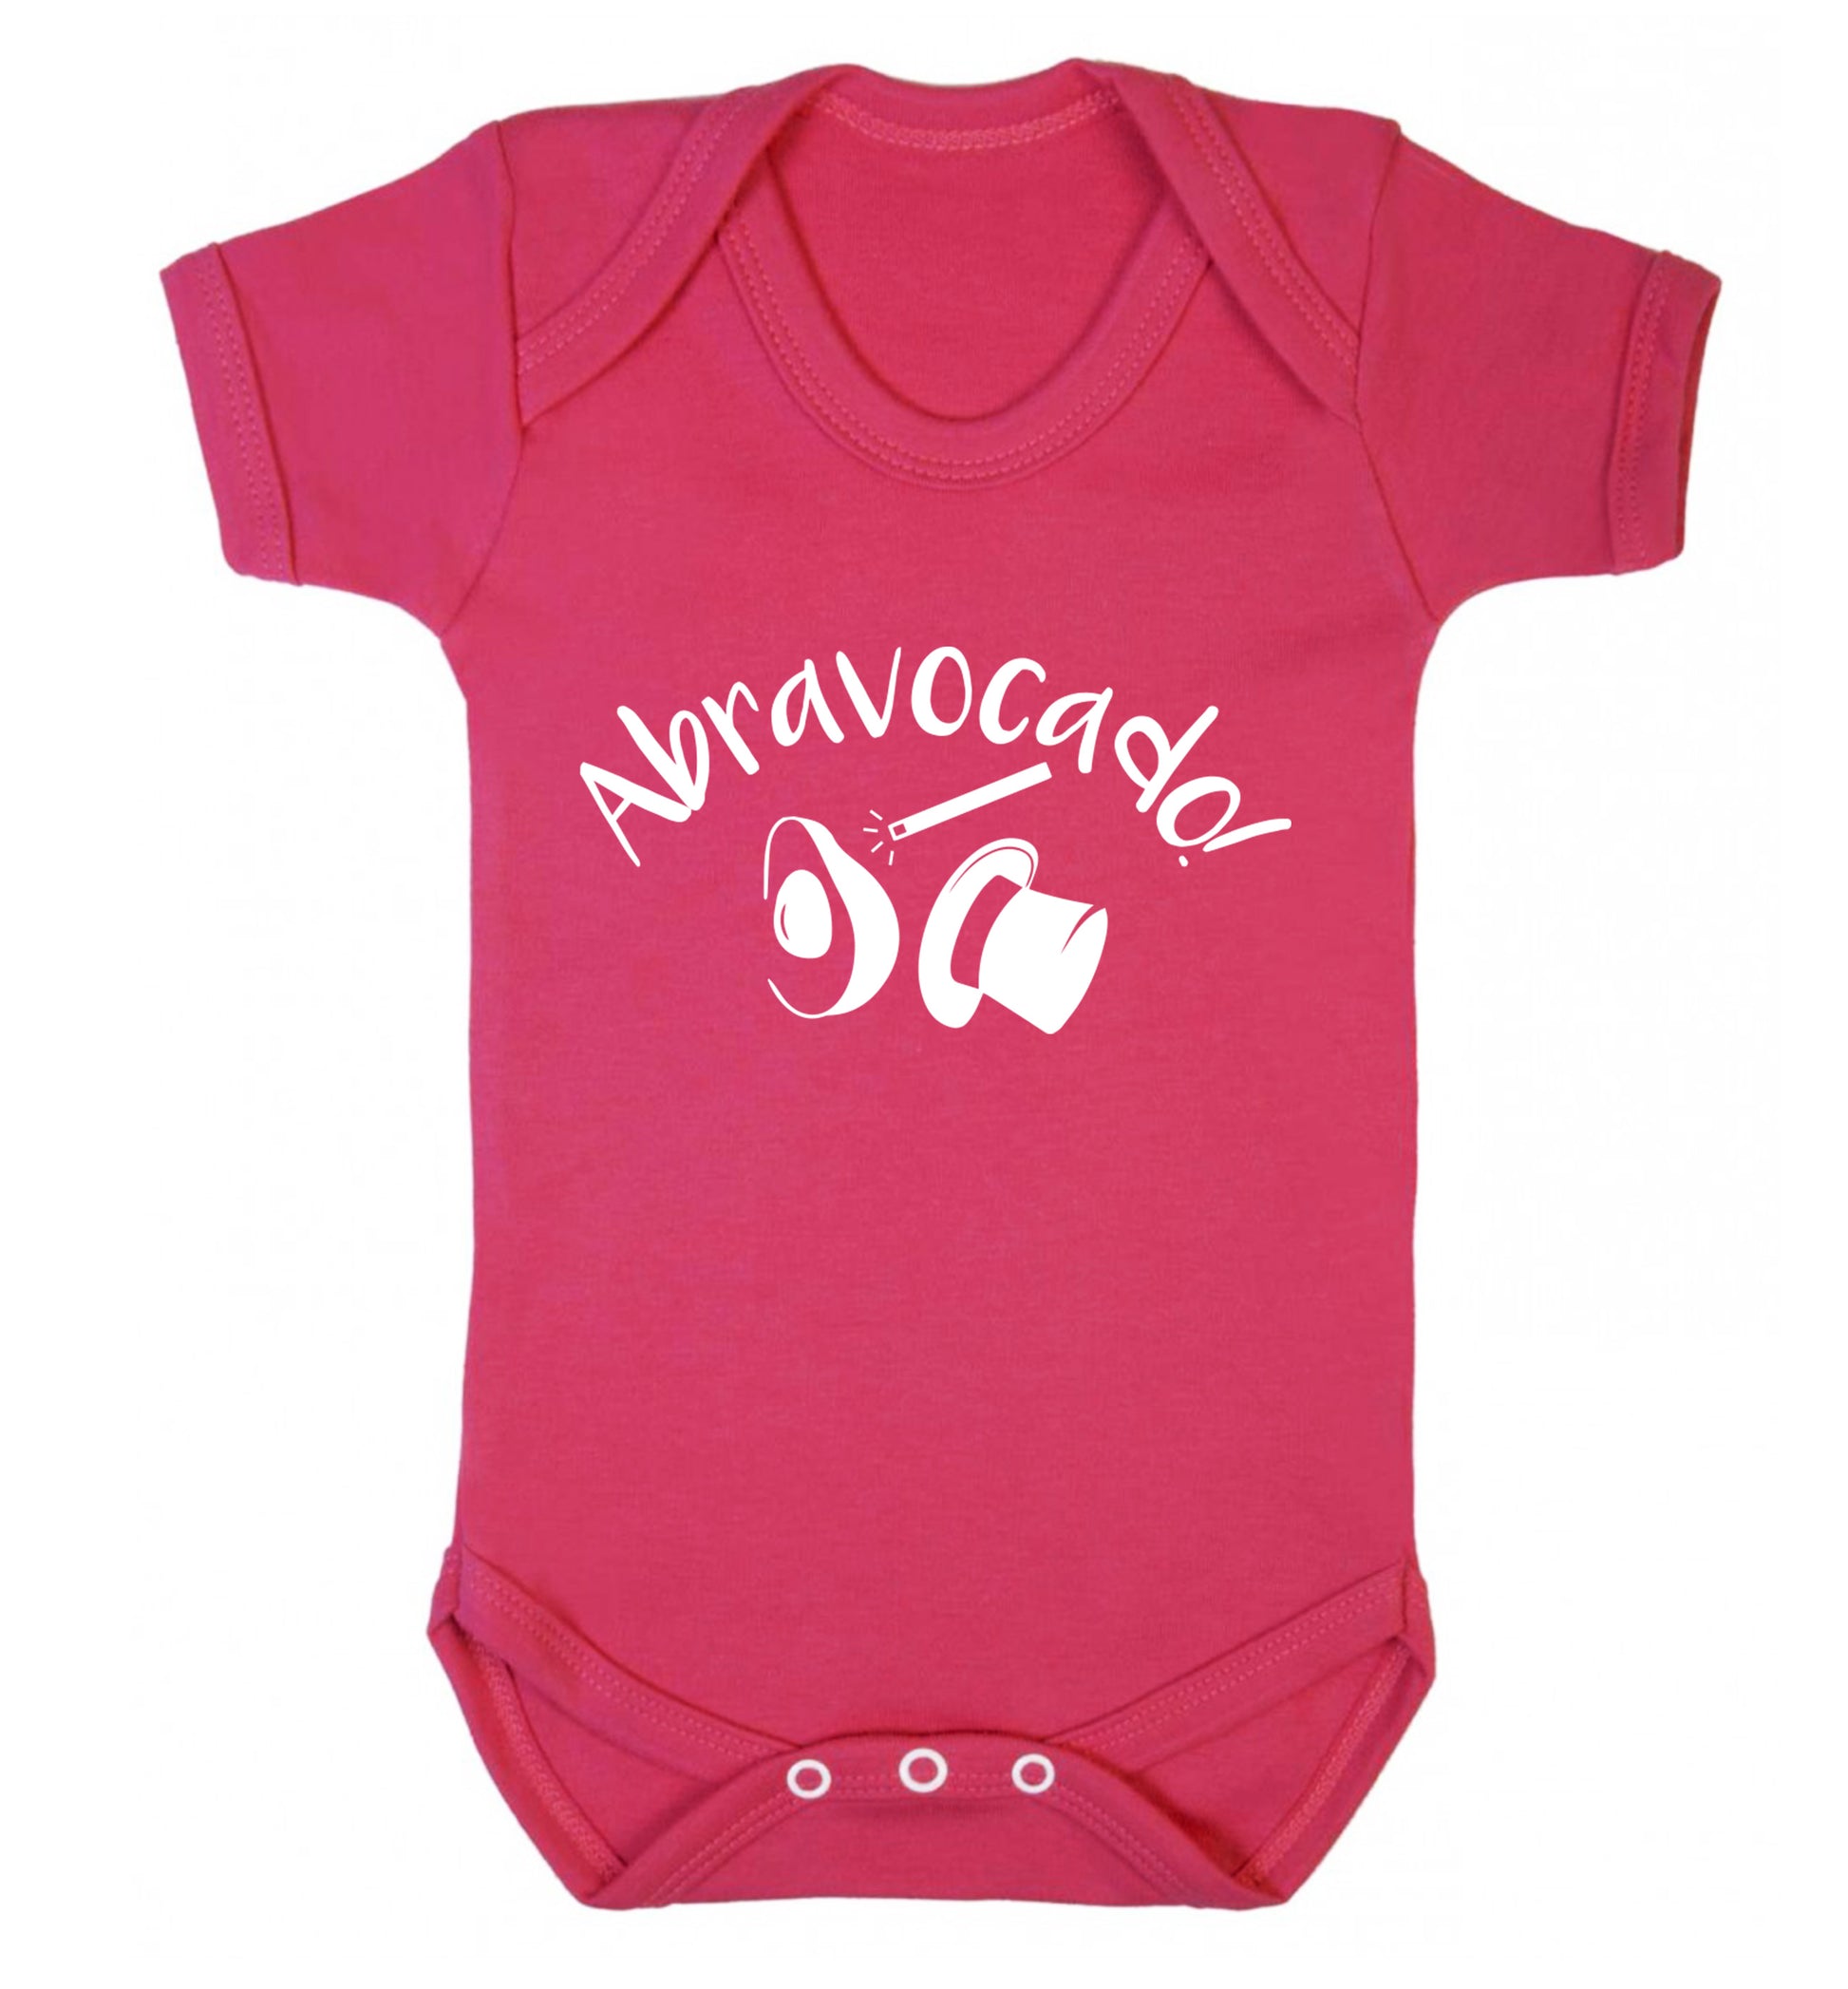 Abravocado Baby Vest dark pink 18-24 months